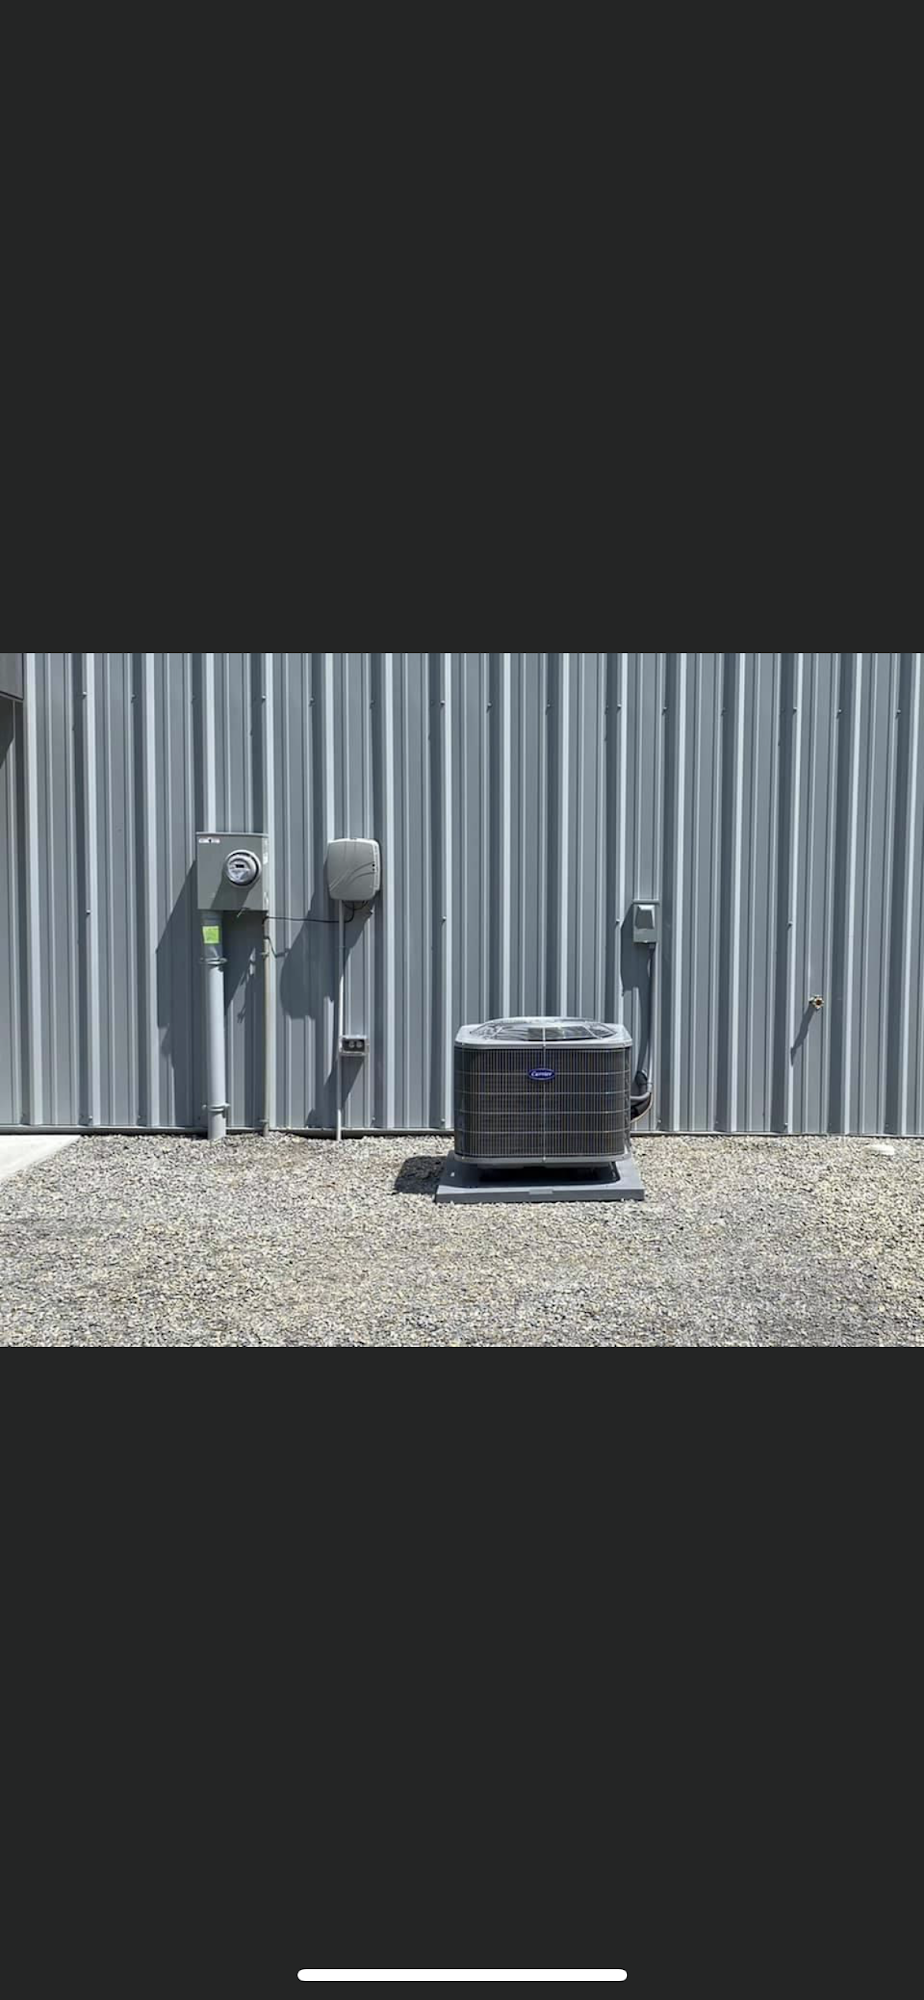 iTemp Heating & Cooling, LLC 255 Murphy Ln, Jamestown Kentucky 42629